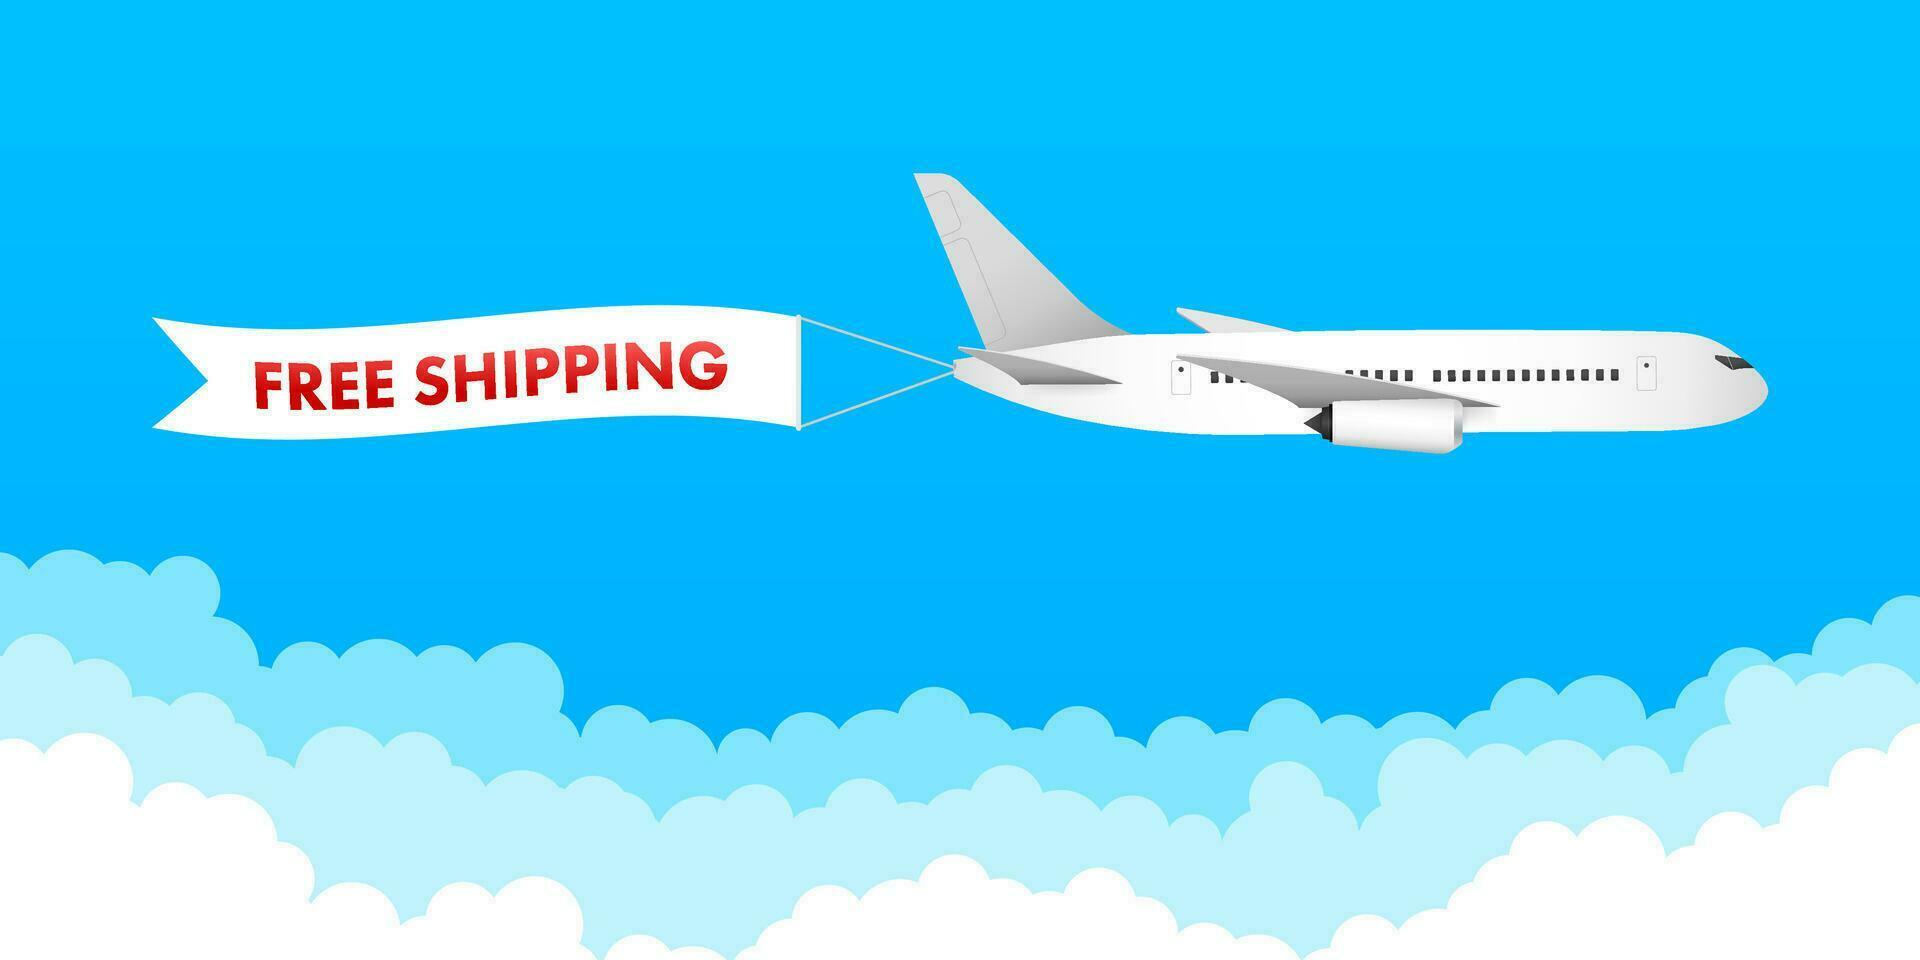 flygplan med märka fri frakt, e handel, luft hantverk. vektor stock illustration